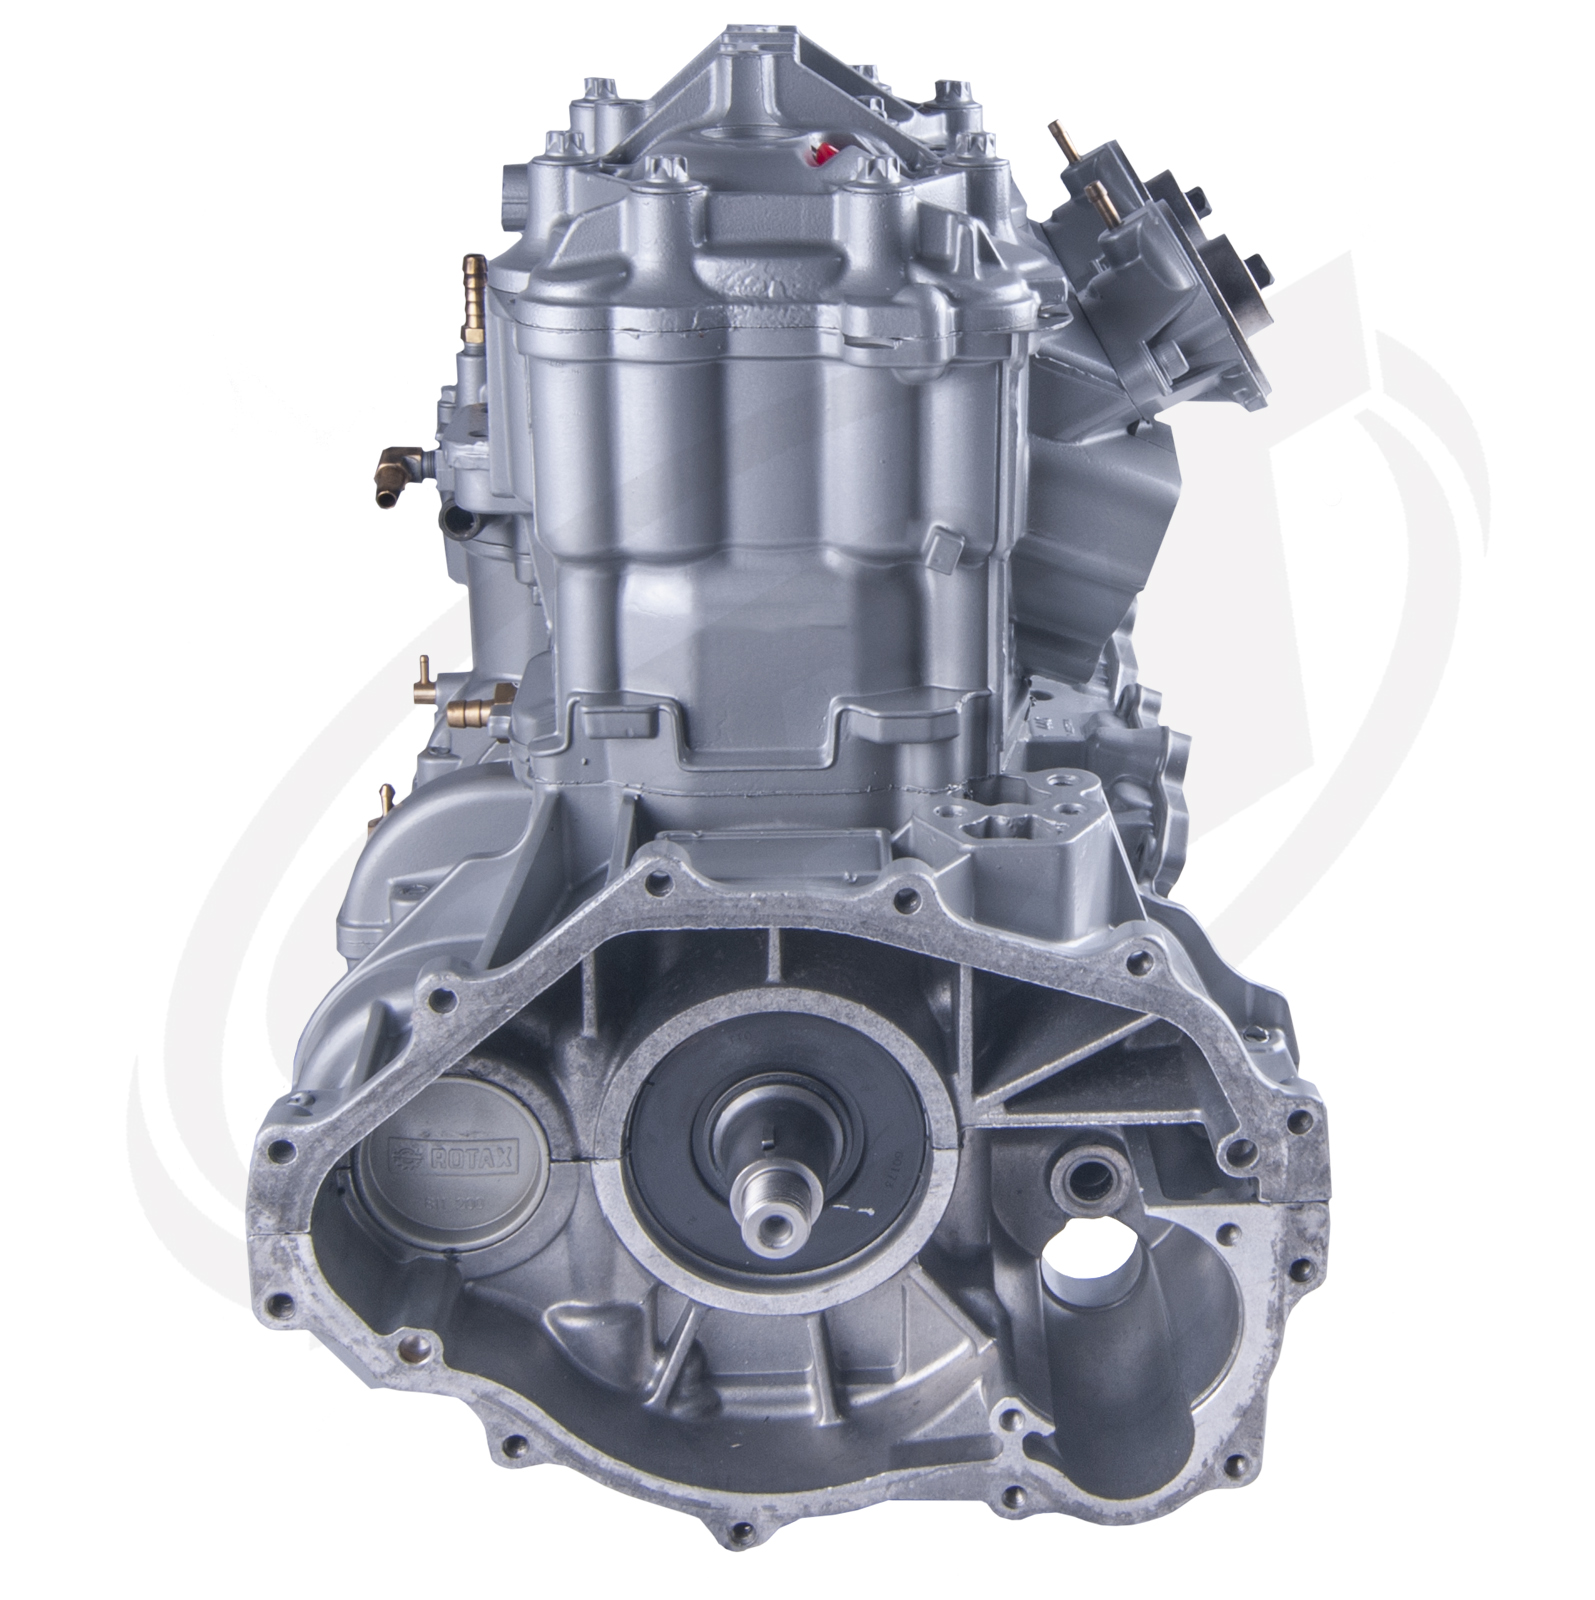 Engine for Sea-Doo 951 DI RX DI /GTX DI /LRV DI /XP DI /LE DI /3D DI  2000-06: